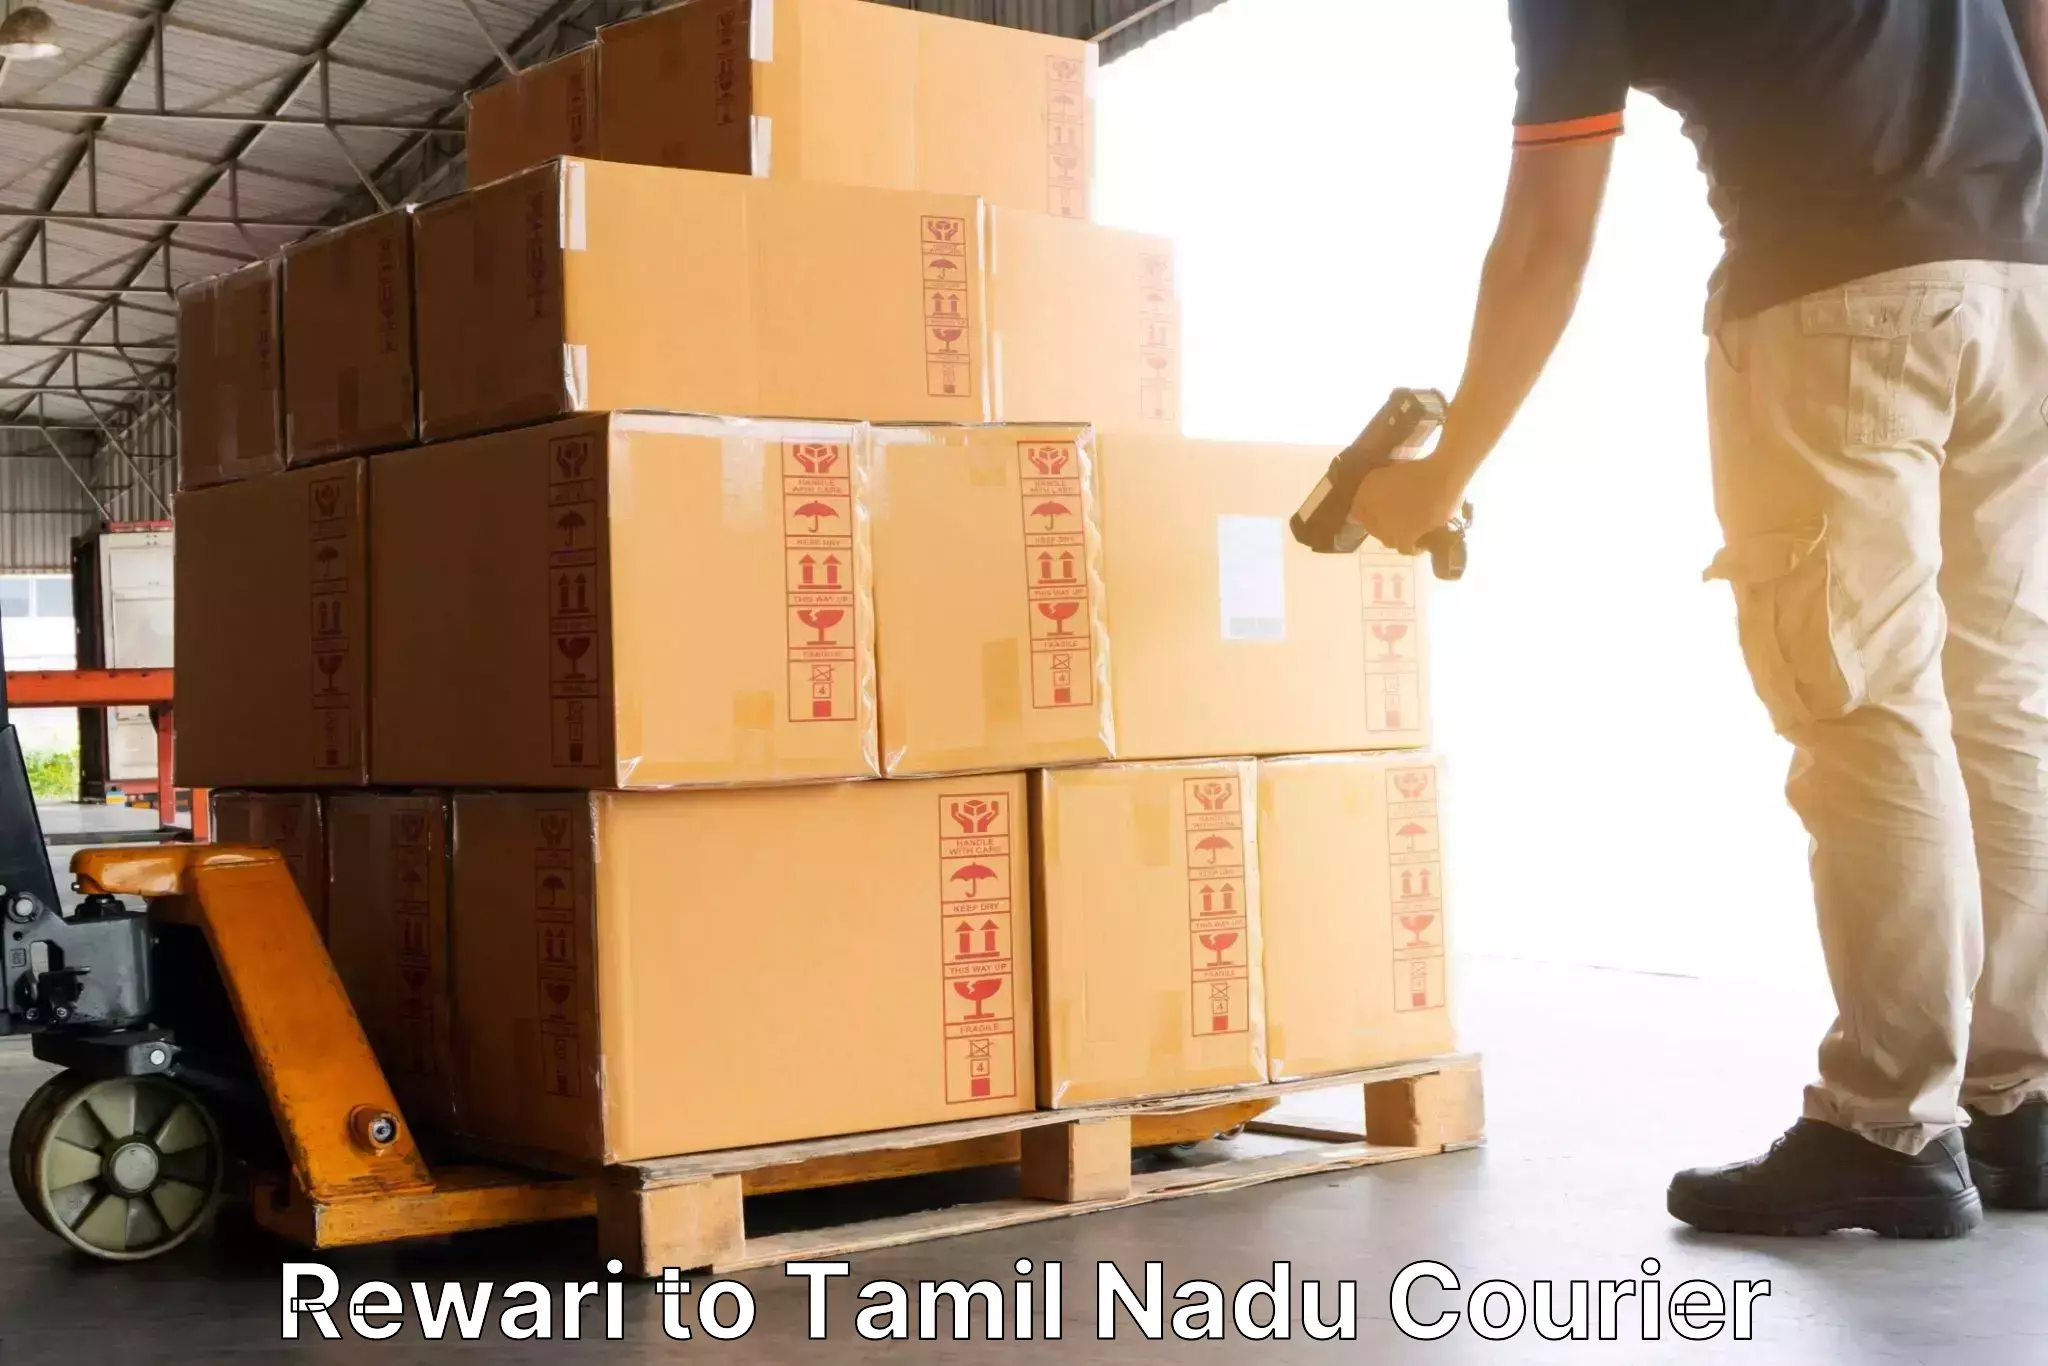 Round-the-clock parcel delivery Rewari to Chinnasalem